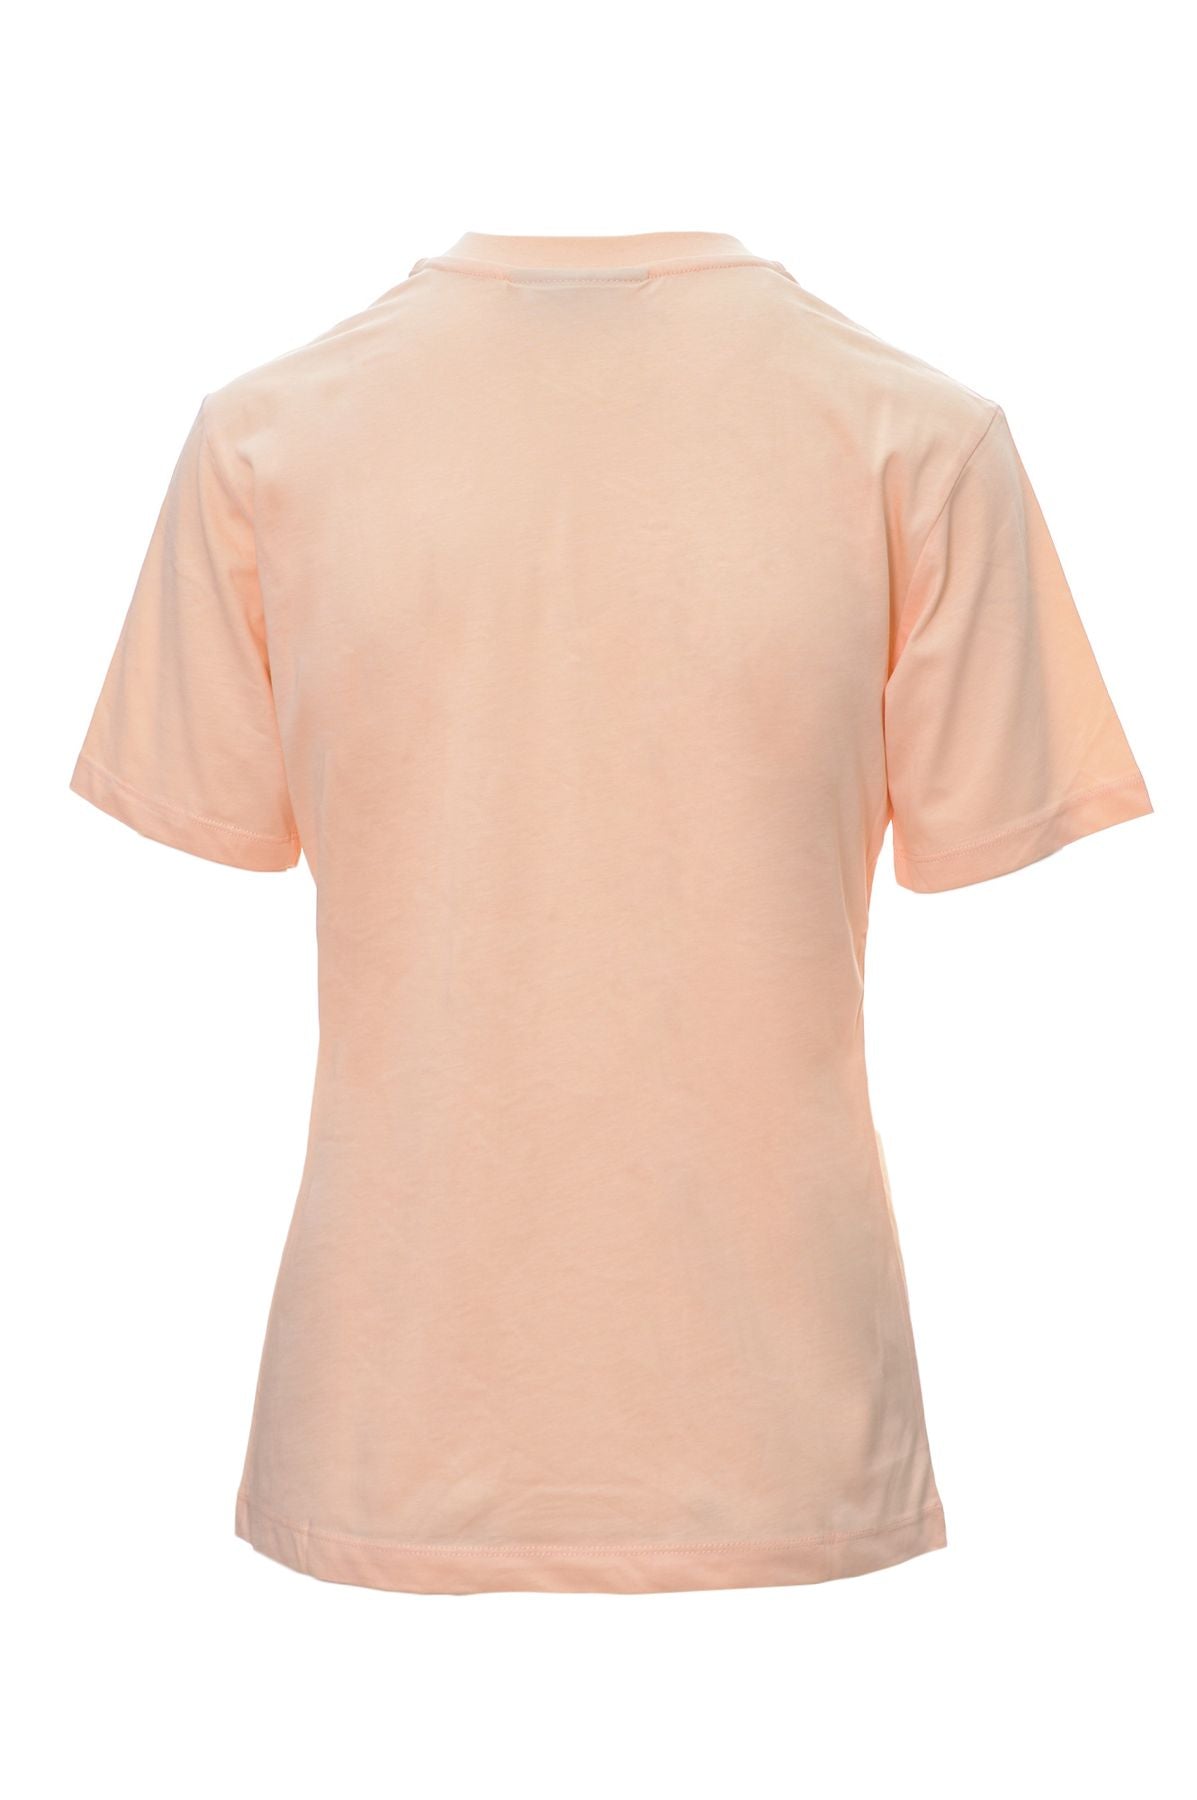 CHIARA FERRAGNI T-shirt Primavera/Estate Cotone